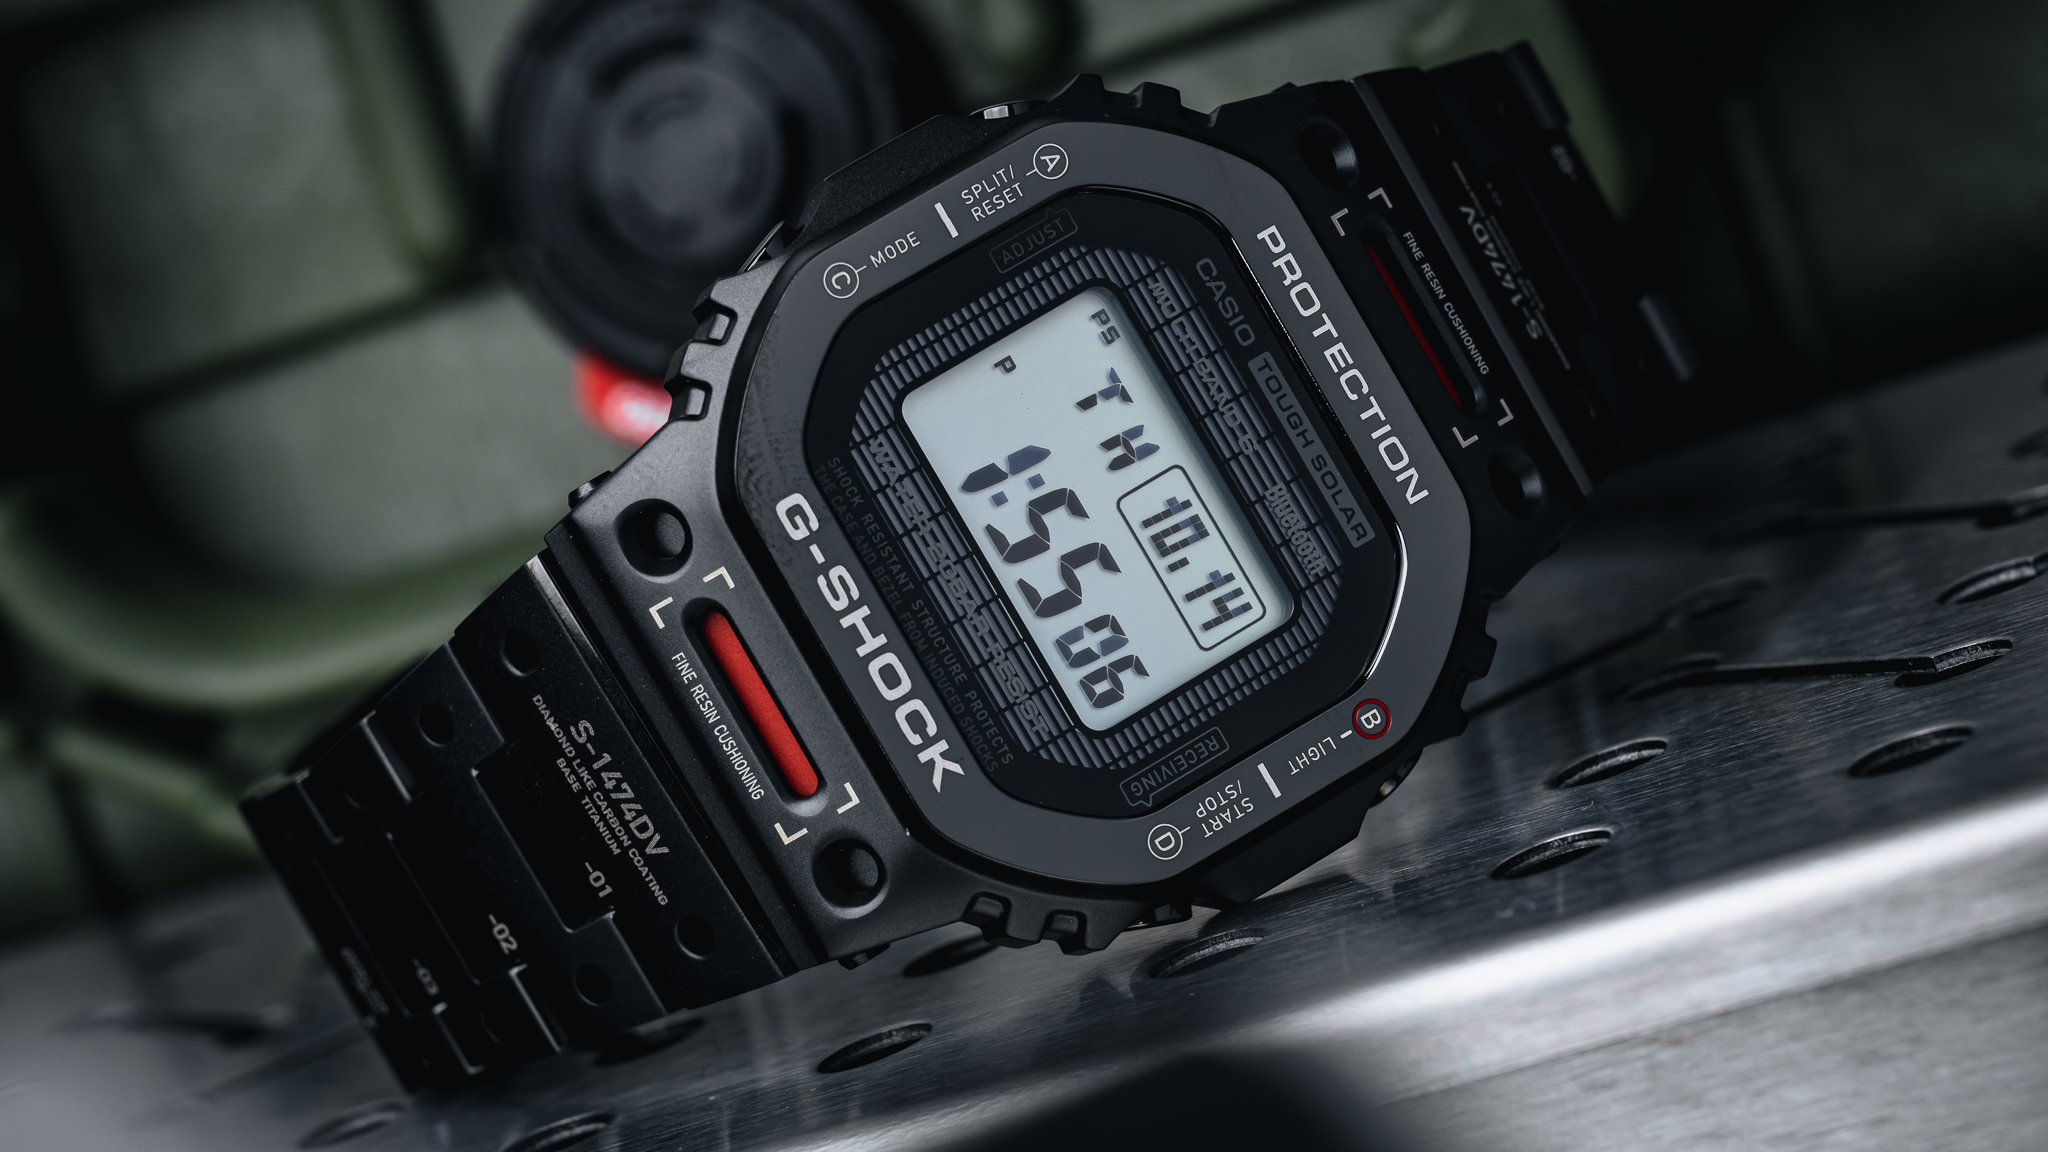 Casio Debuts G-Shock GMW-B5000-TVA1 'Virtual Armor' Watch